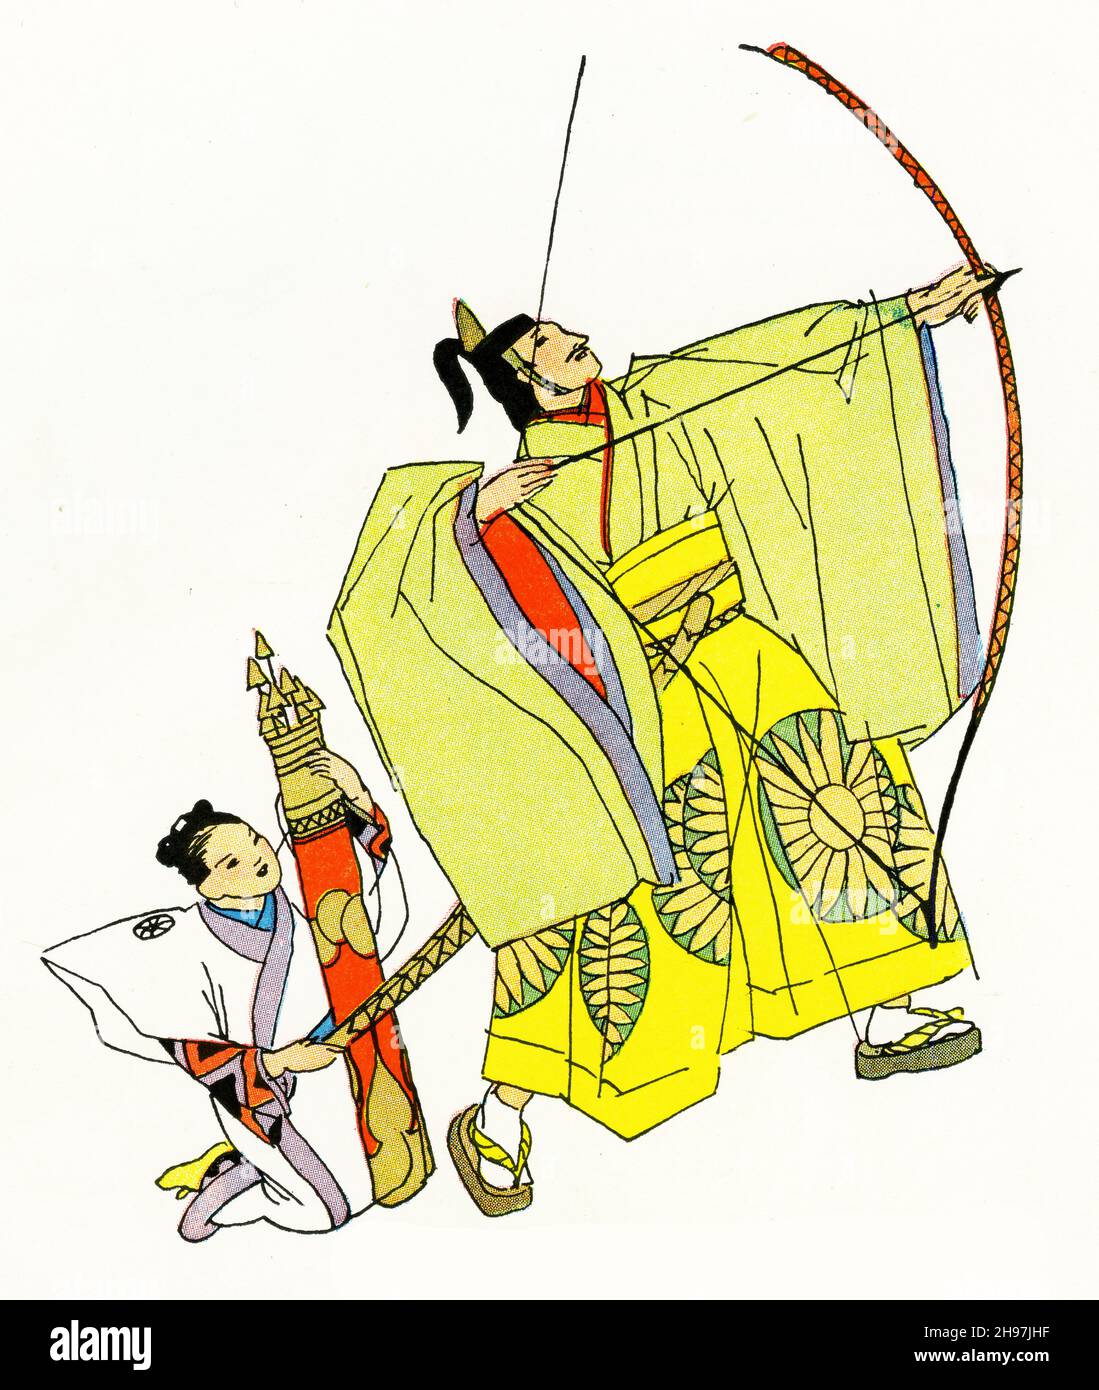 Illustration pittoresque de la vie traditionnelle au Japon, avec le mikado tirant sa flèche d'un arc de longue longueur; publié vers 1928 Banque D'Images